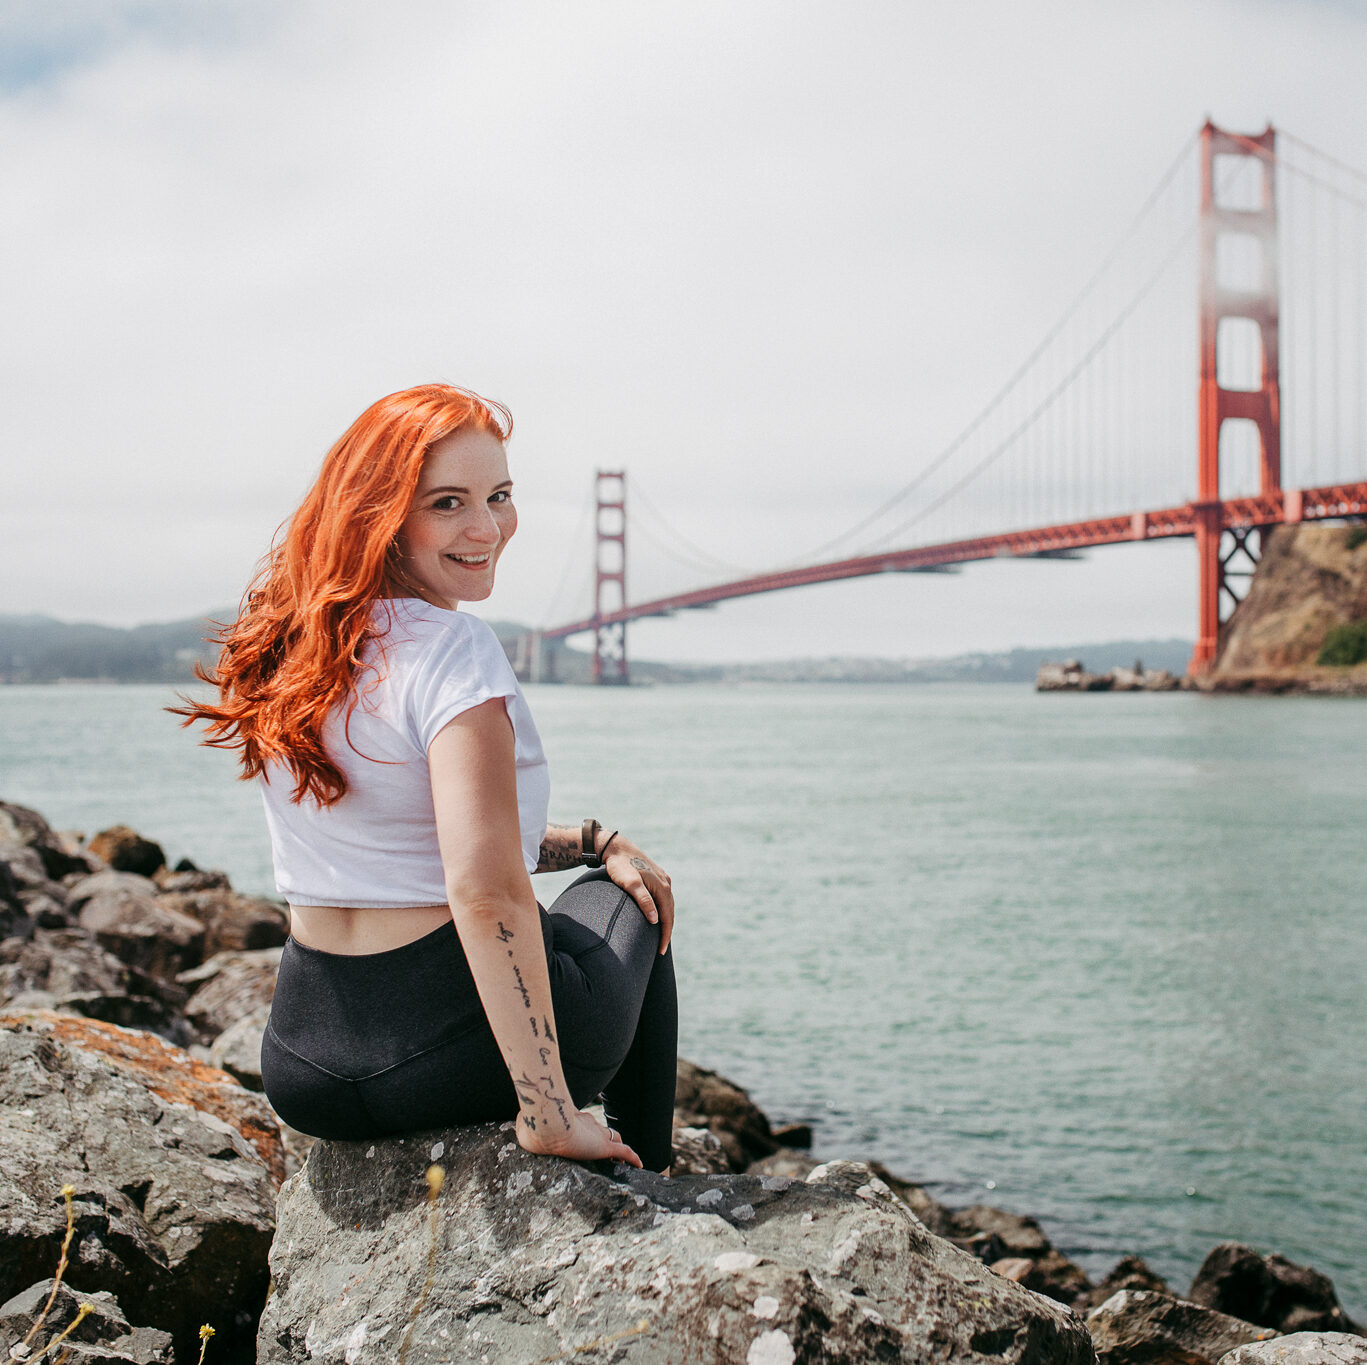 Fotografin Kim Kärger sitzt auf ein paar Steinen am Meer mit dem Ausblick auf die Golden Gate Bridge in San Francisco. Blickt nach hinten in die Kamera und lächelt.